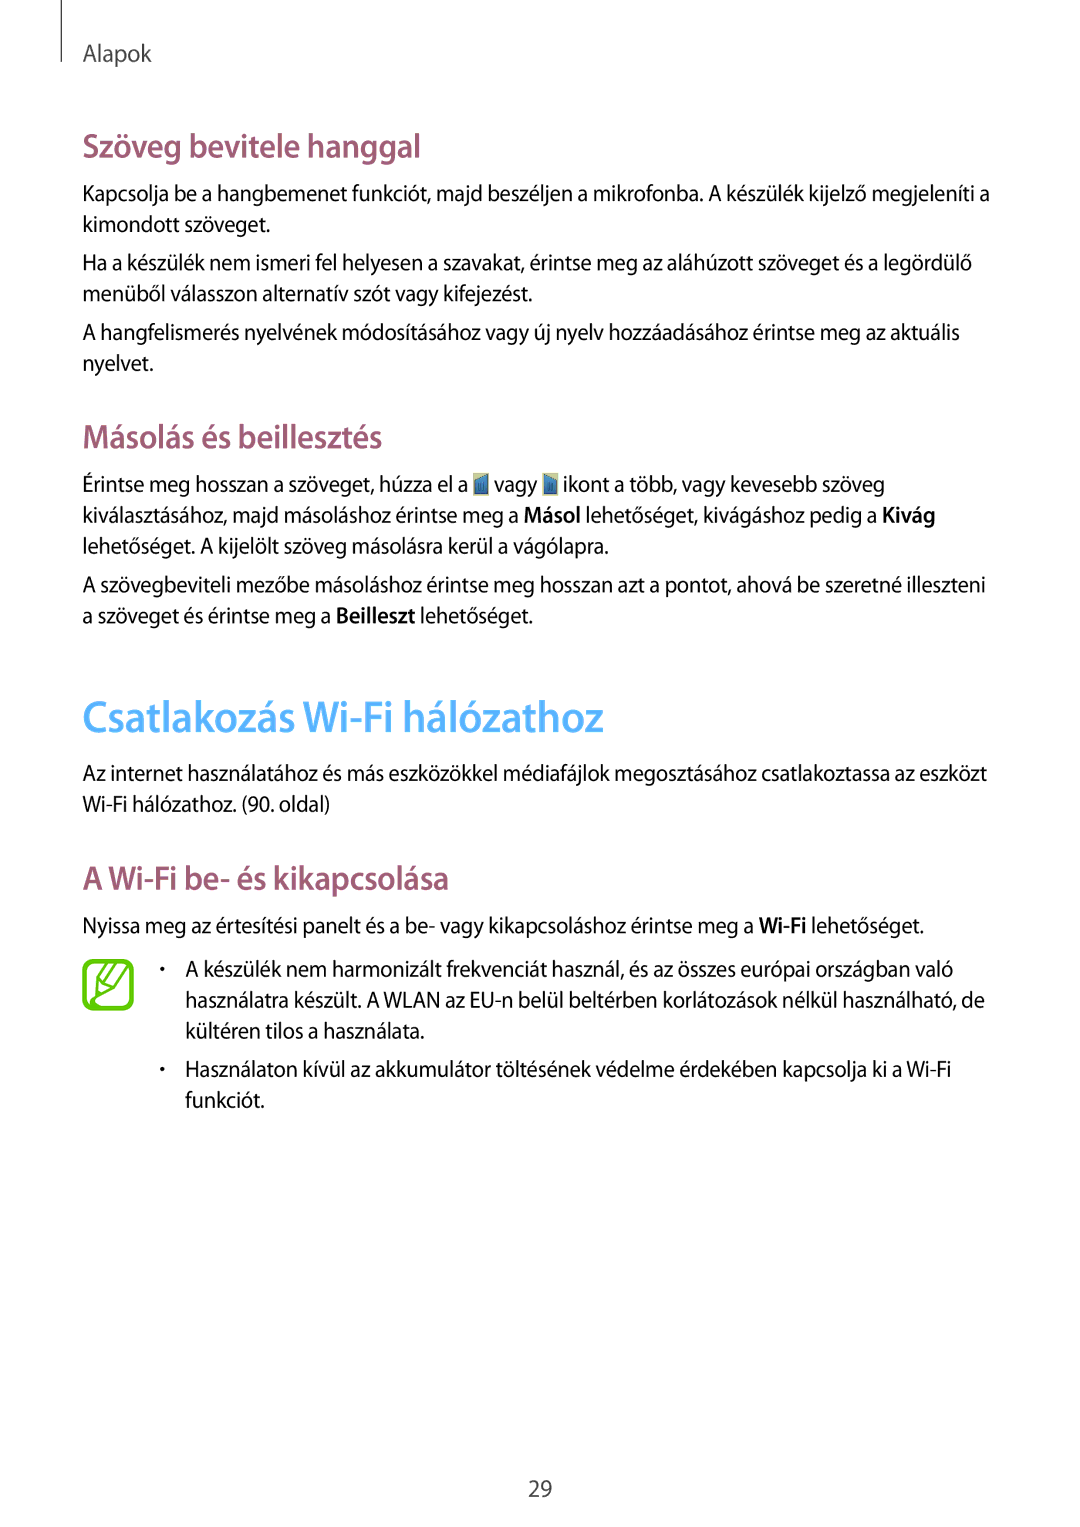 Samsung GT-P5220MKAAUT, GT-P5220GNASWC manual Csatlakozás Wi-Fi hálózathoz, Szöveg bevitele hanggal, Másolás és beillesztés 